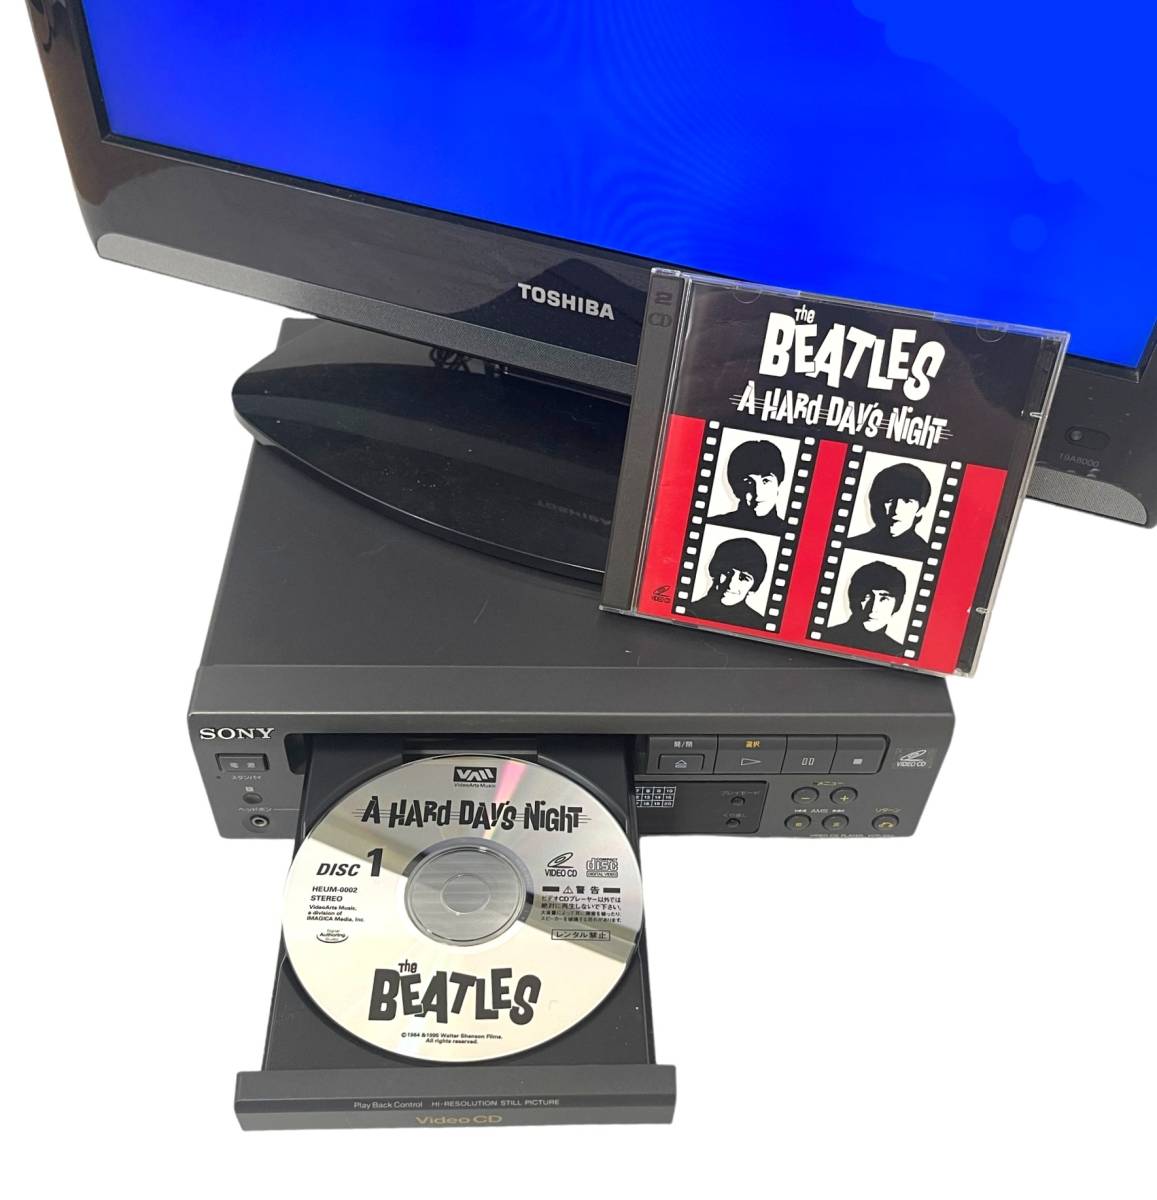 [ редкостный носитель информации / рабочий товар ]SONY Sony VCP-S50 Video CD PLAYER VCD BEATLES Beatles. дополнение 